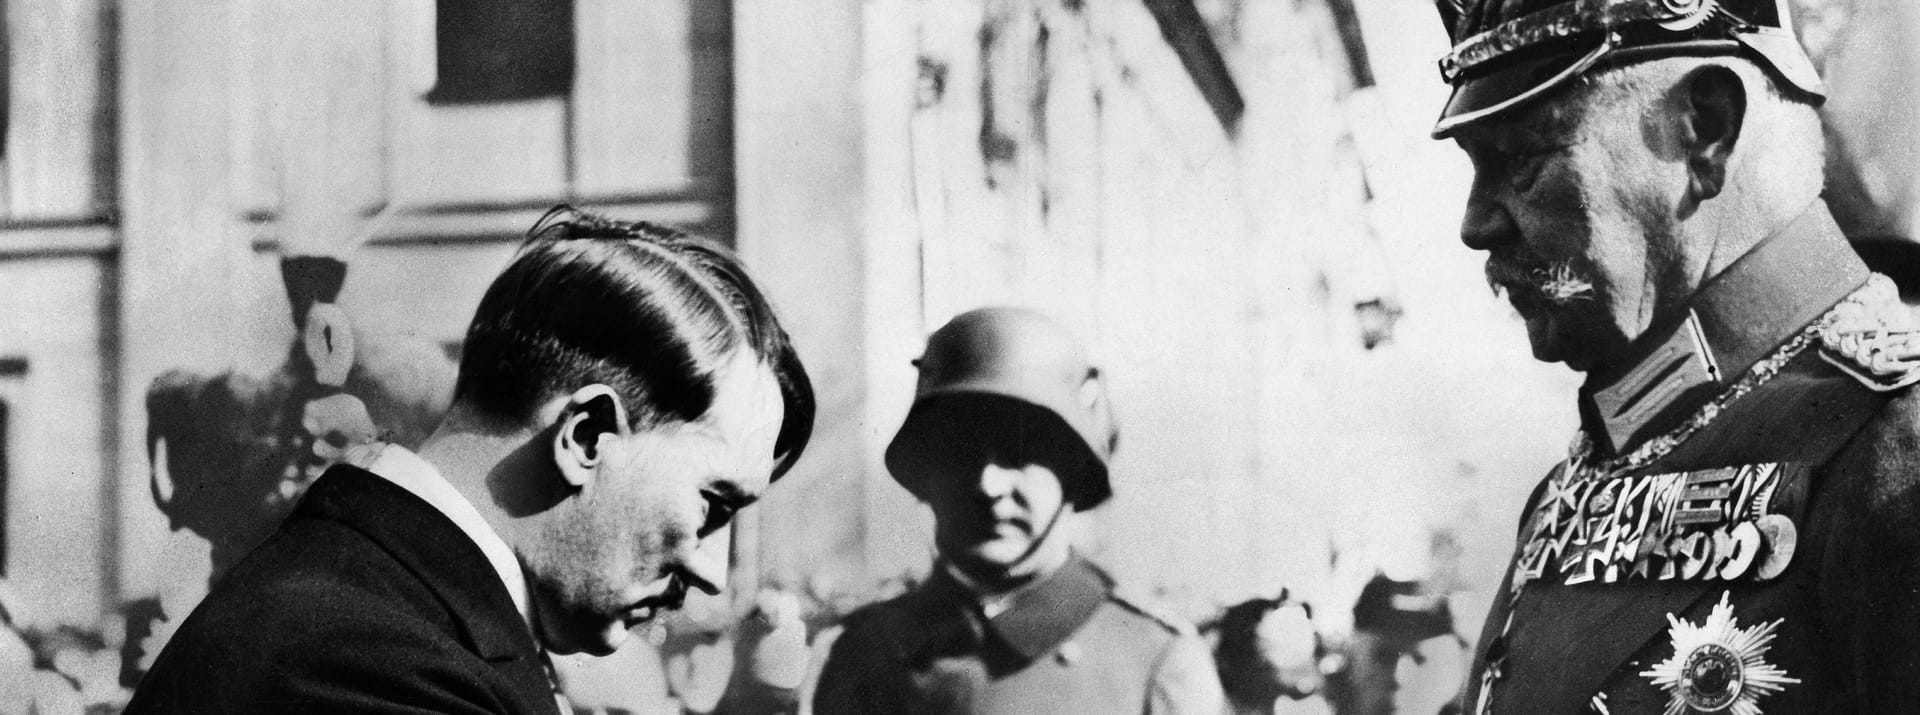 21.03.1933: Als sich Hitler scheinbar demütig gab